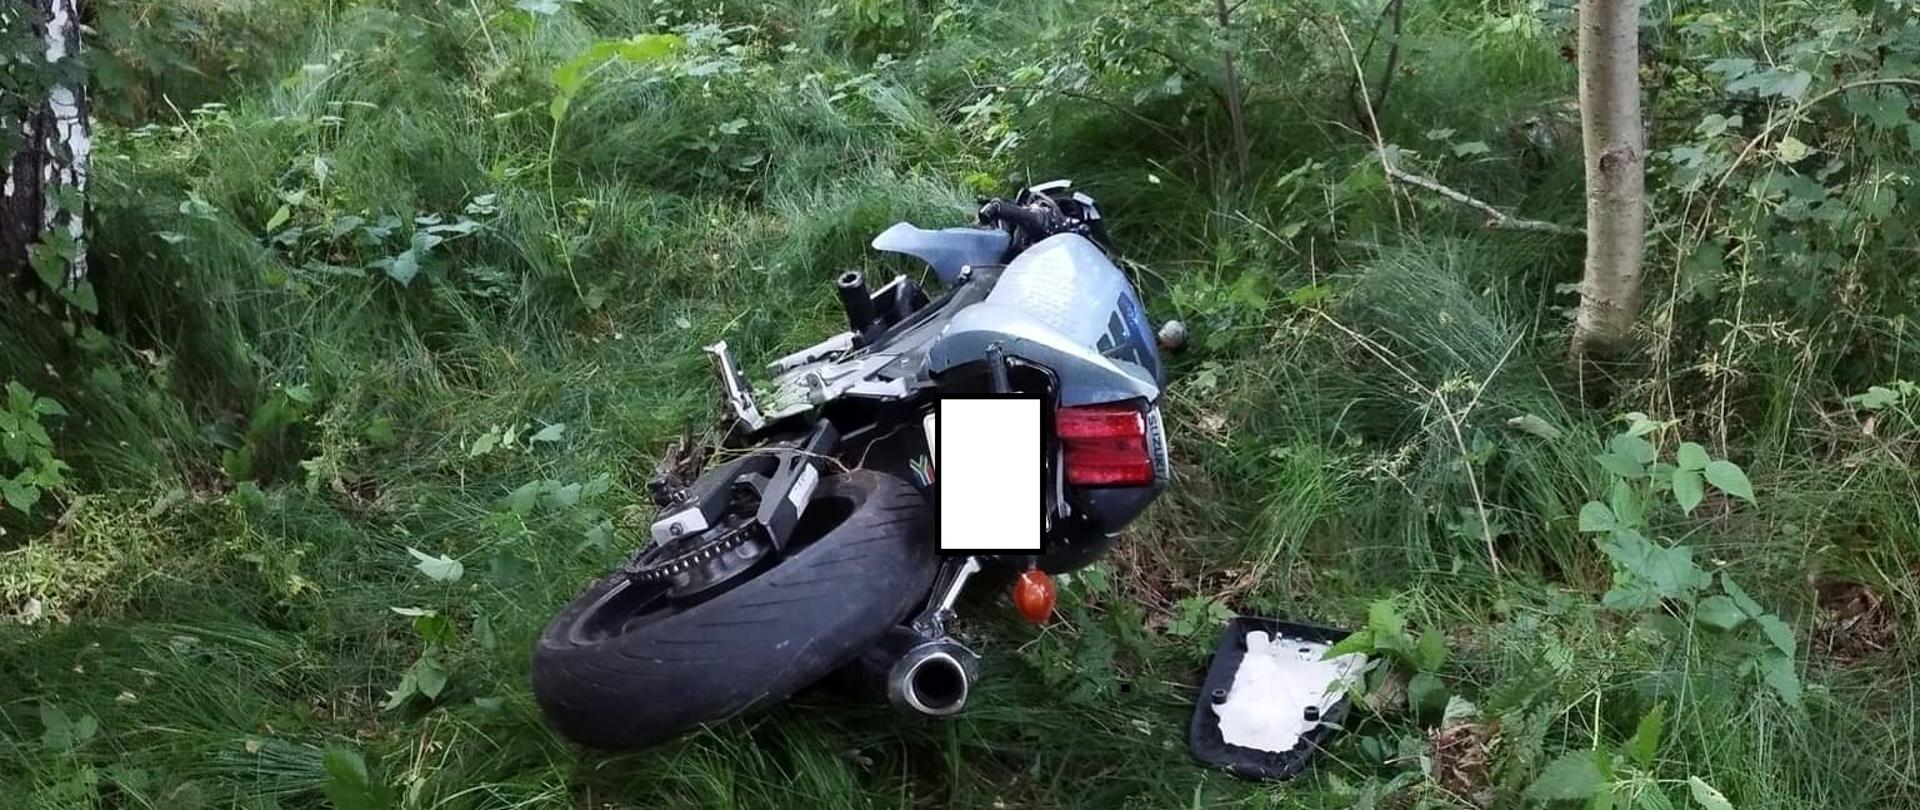 Na zdjęciu leżący motocykl w zadrzewionym terenie